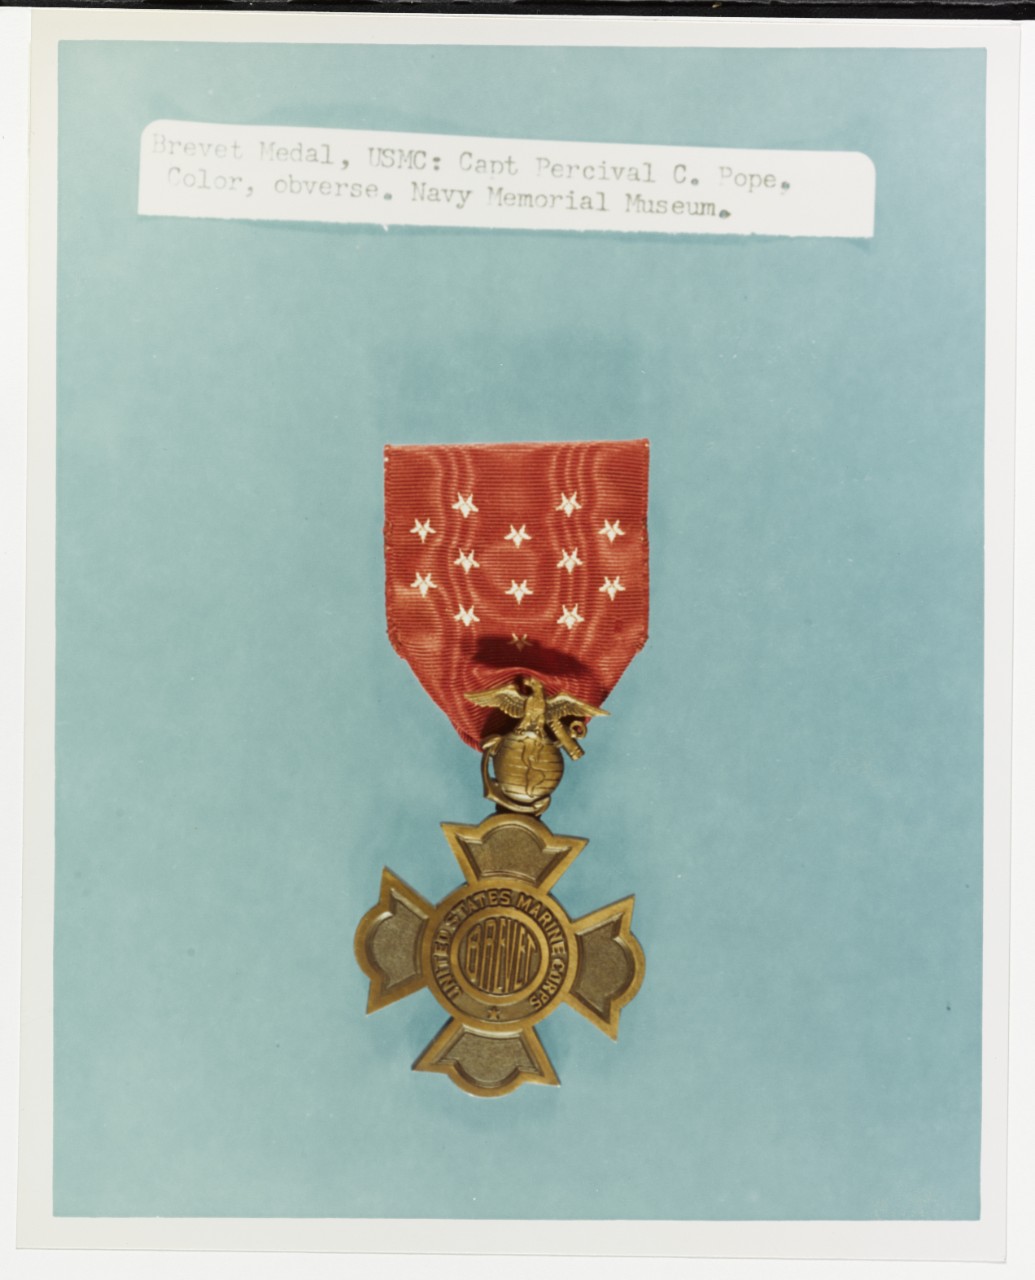 Brevet Medal, United States Marine Corps